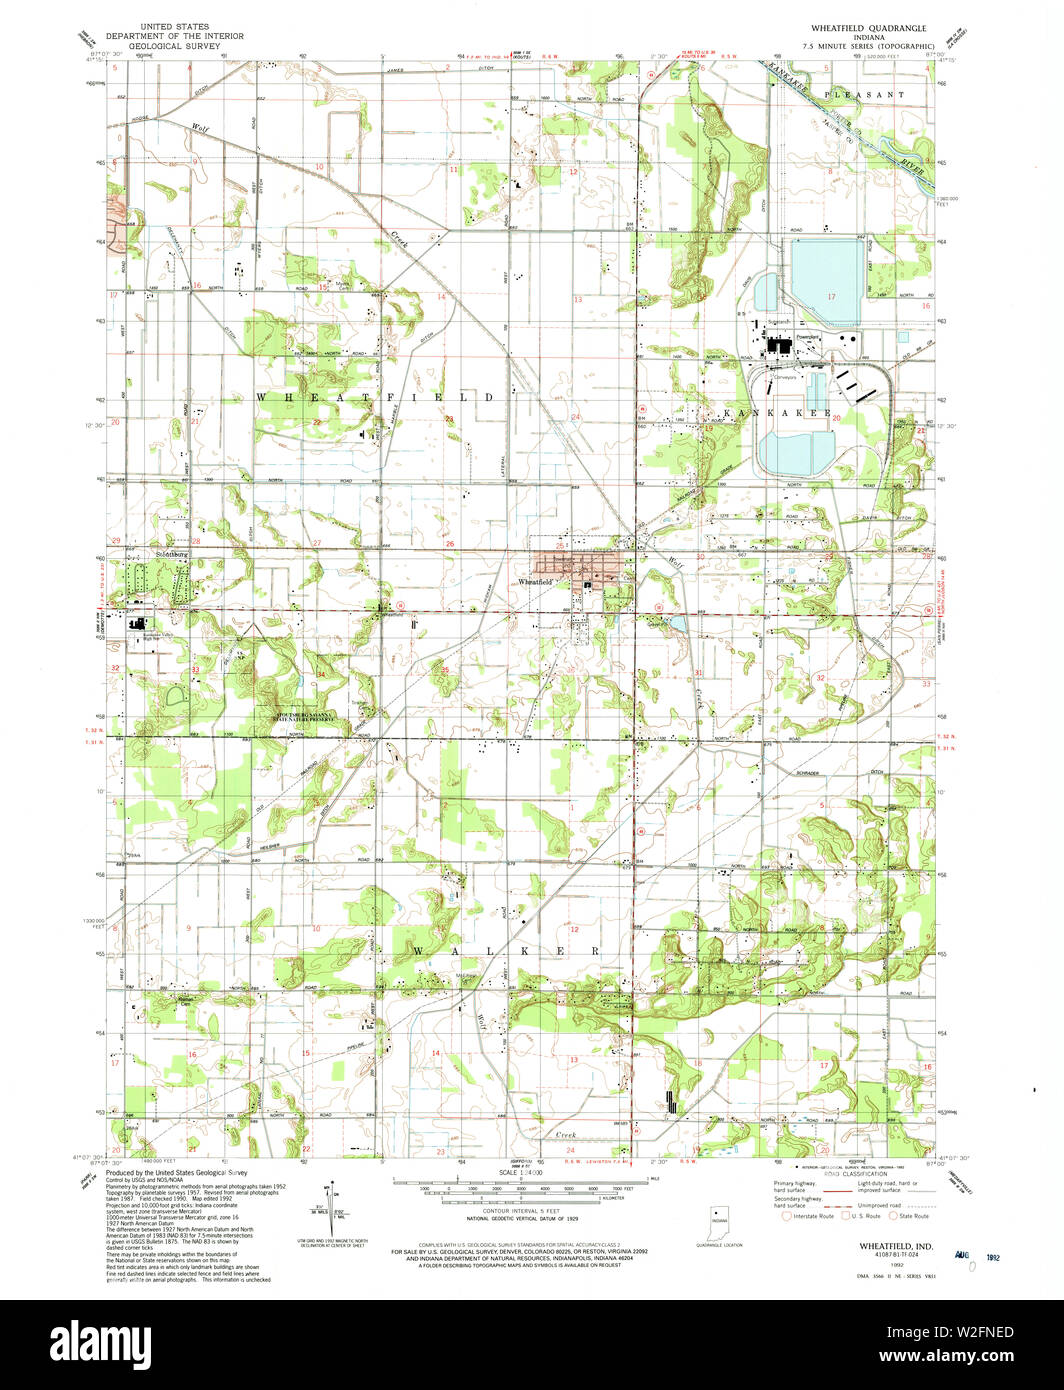 USGS TOPO Karte Indiana in Wheatfield 1992 24000 156201 Restaurierung Stockfoto